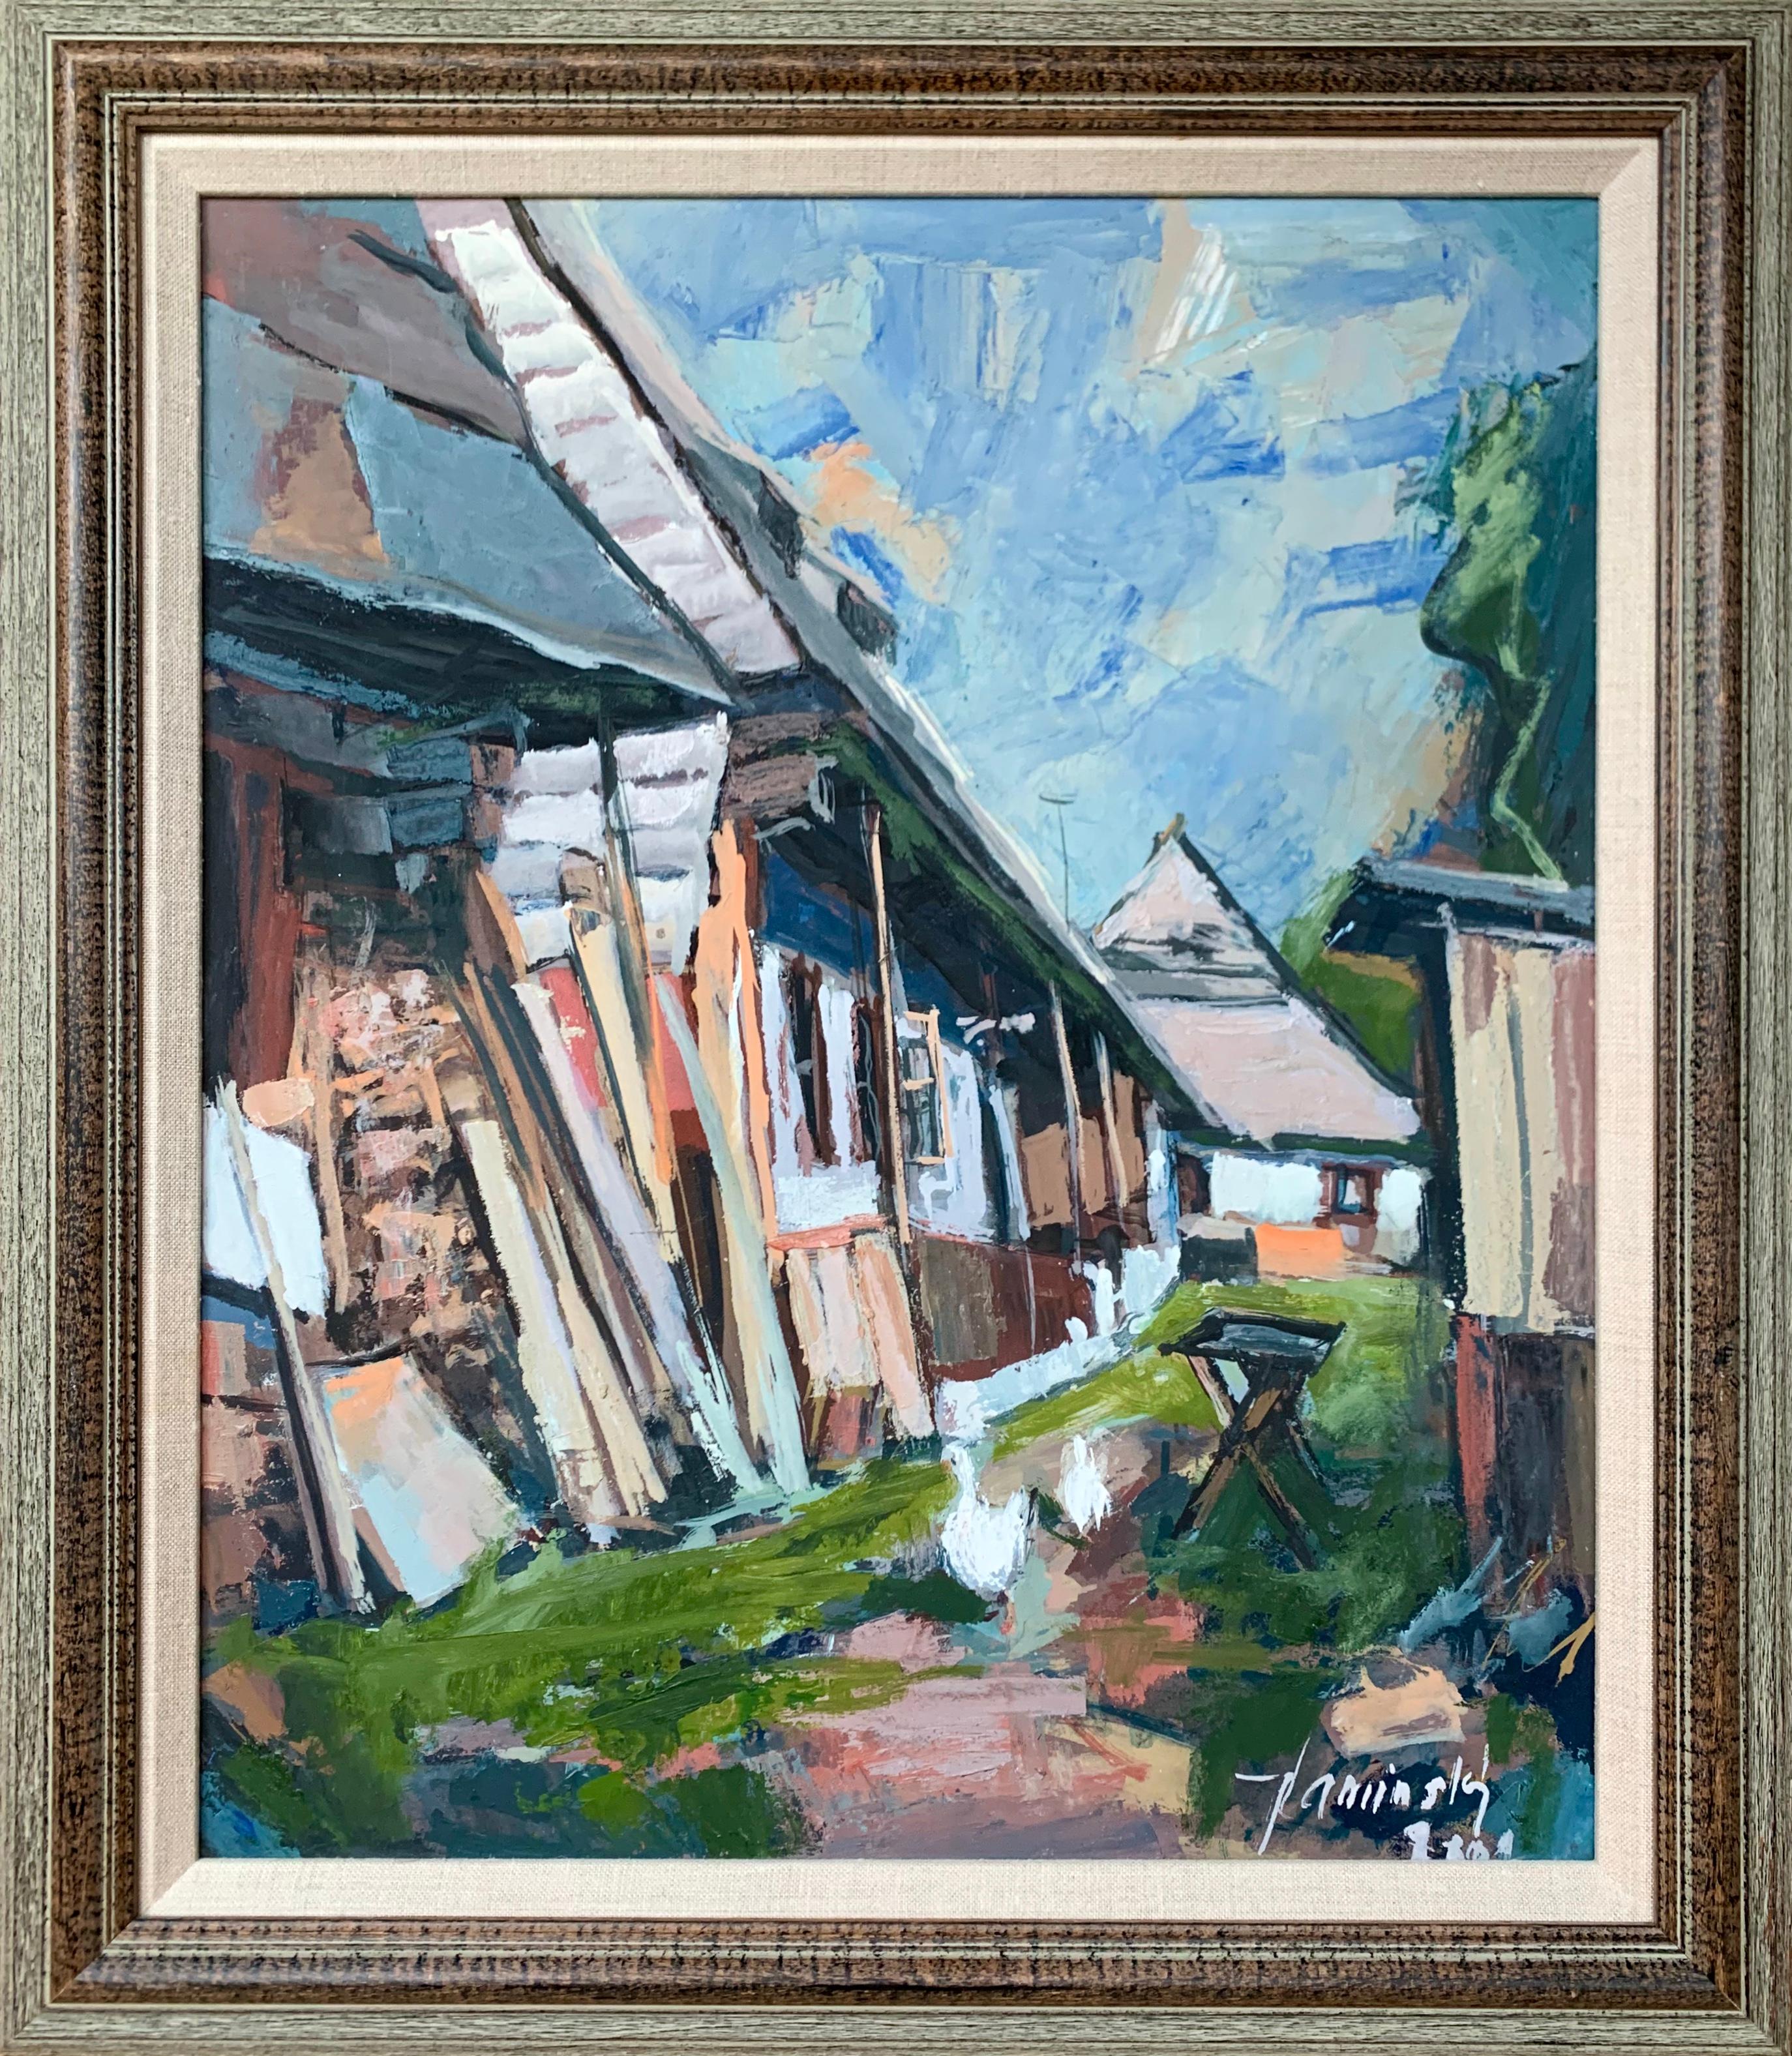 "Scène de village" du peintre slovaque Jozef Kaminsky est une huile sur panneau post-impressionniste représentant une scène de village rural.

Jozef Kaminsky est un peintre slovaque contemporain, né en 1949, dont les thèmes de prédilection sont les